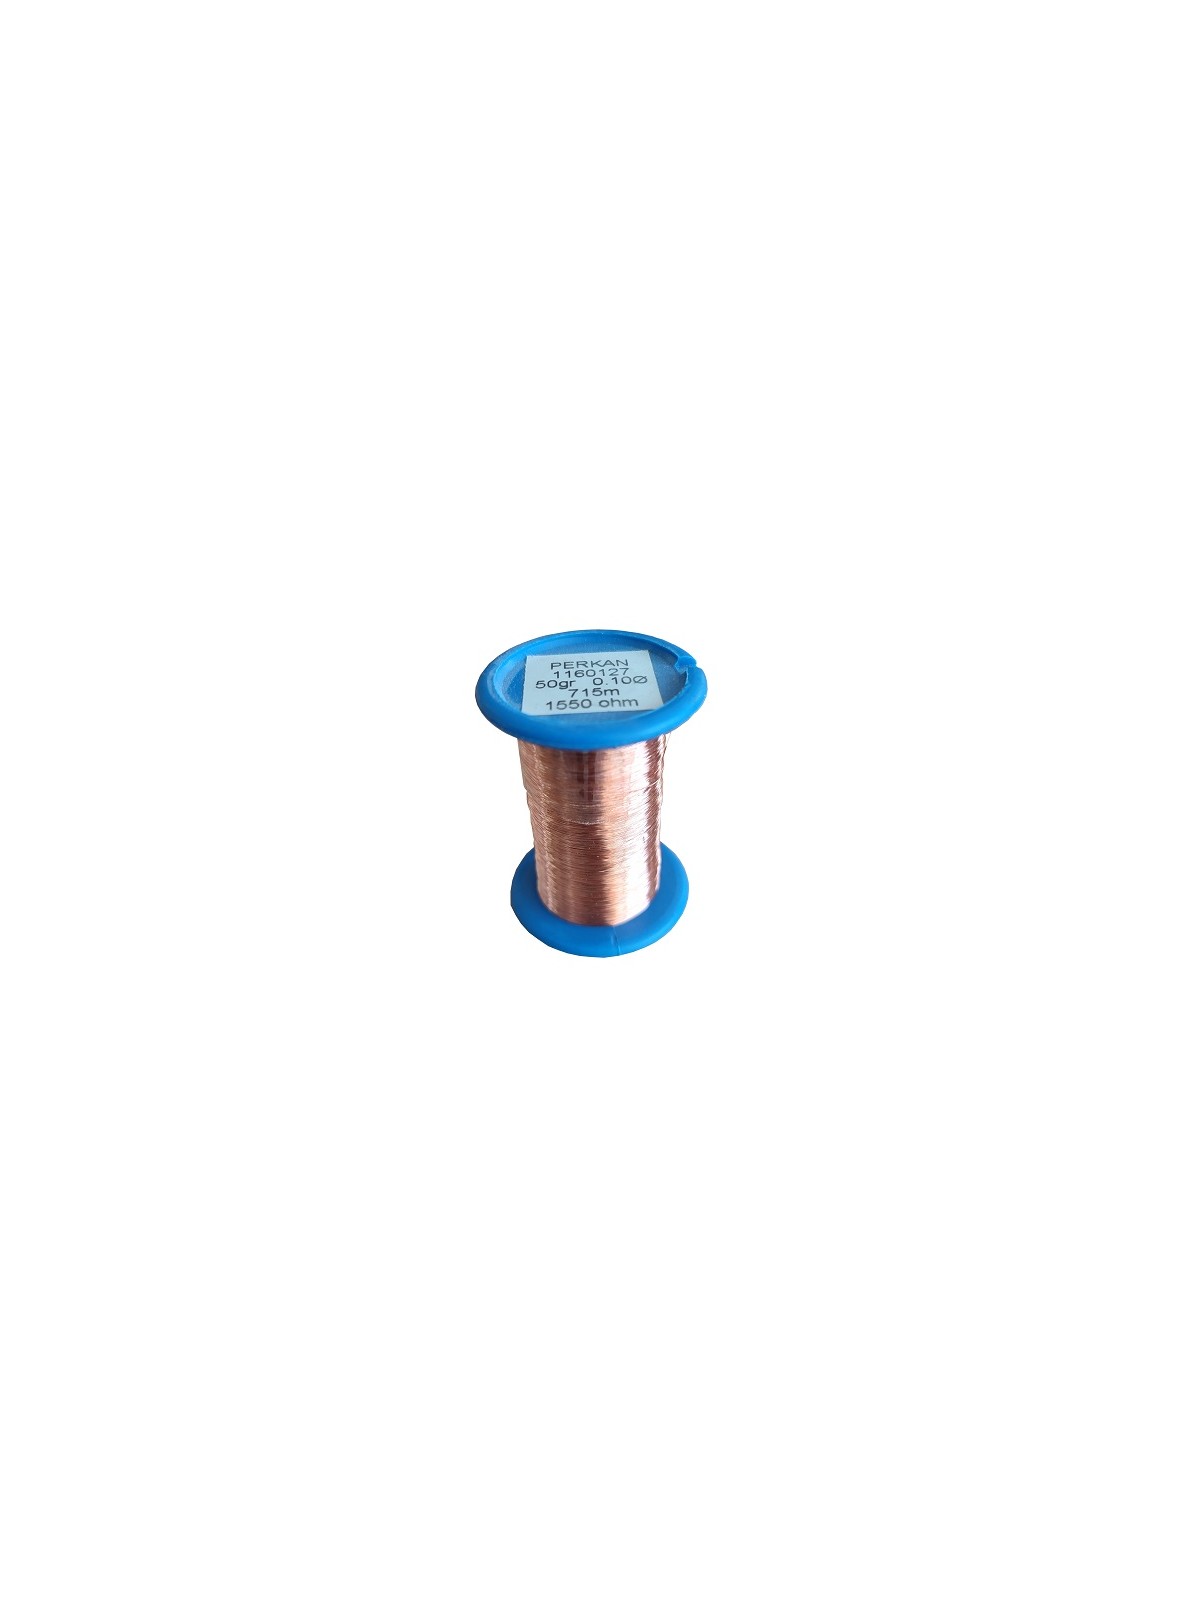 Hilo de cobre esmaltado 0,1 mm.